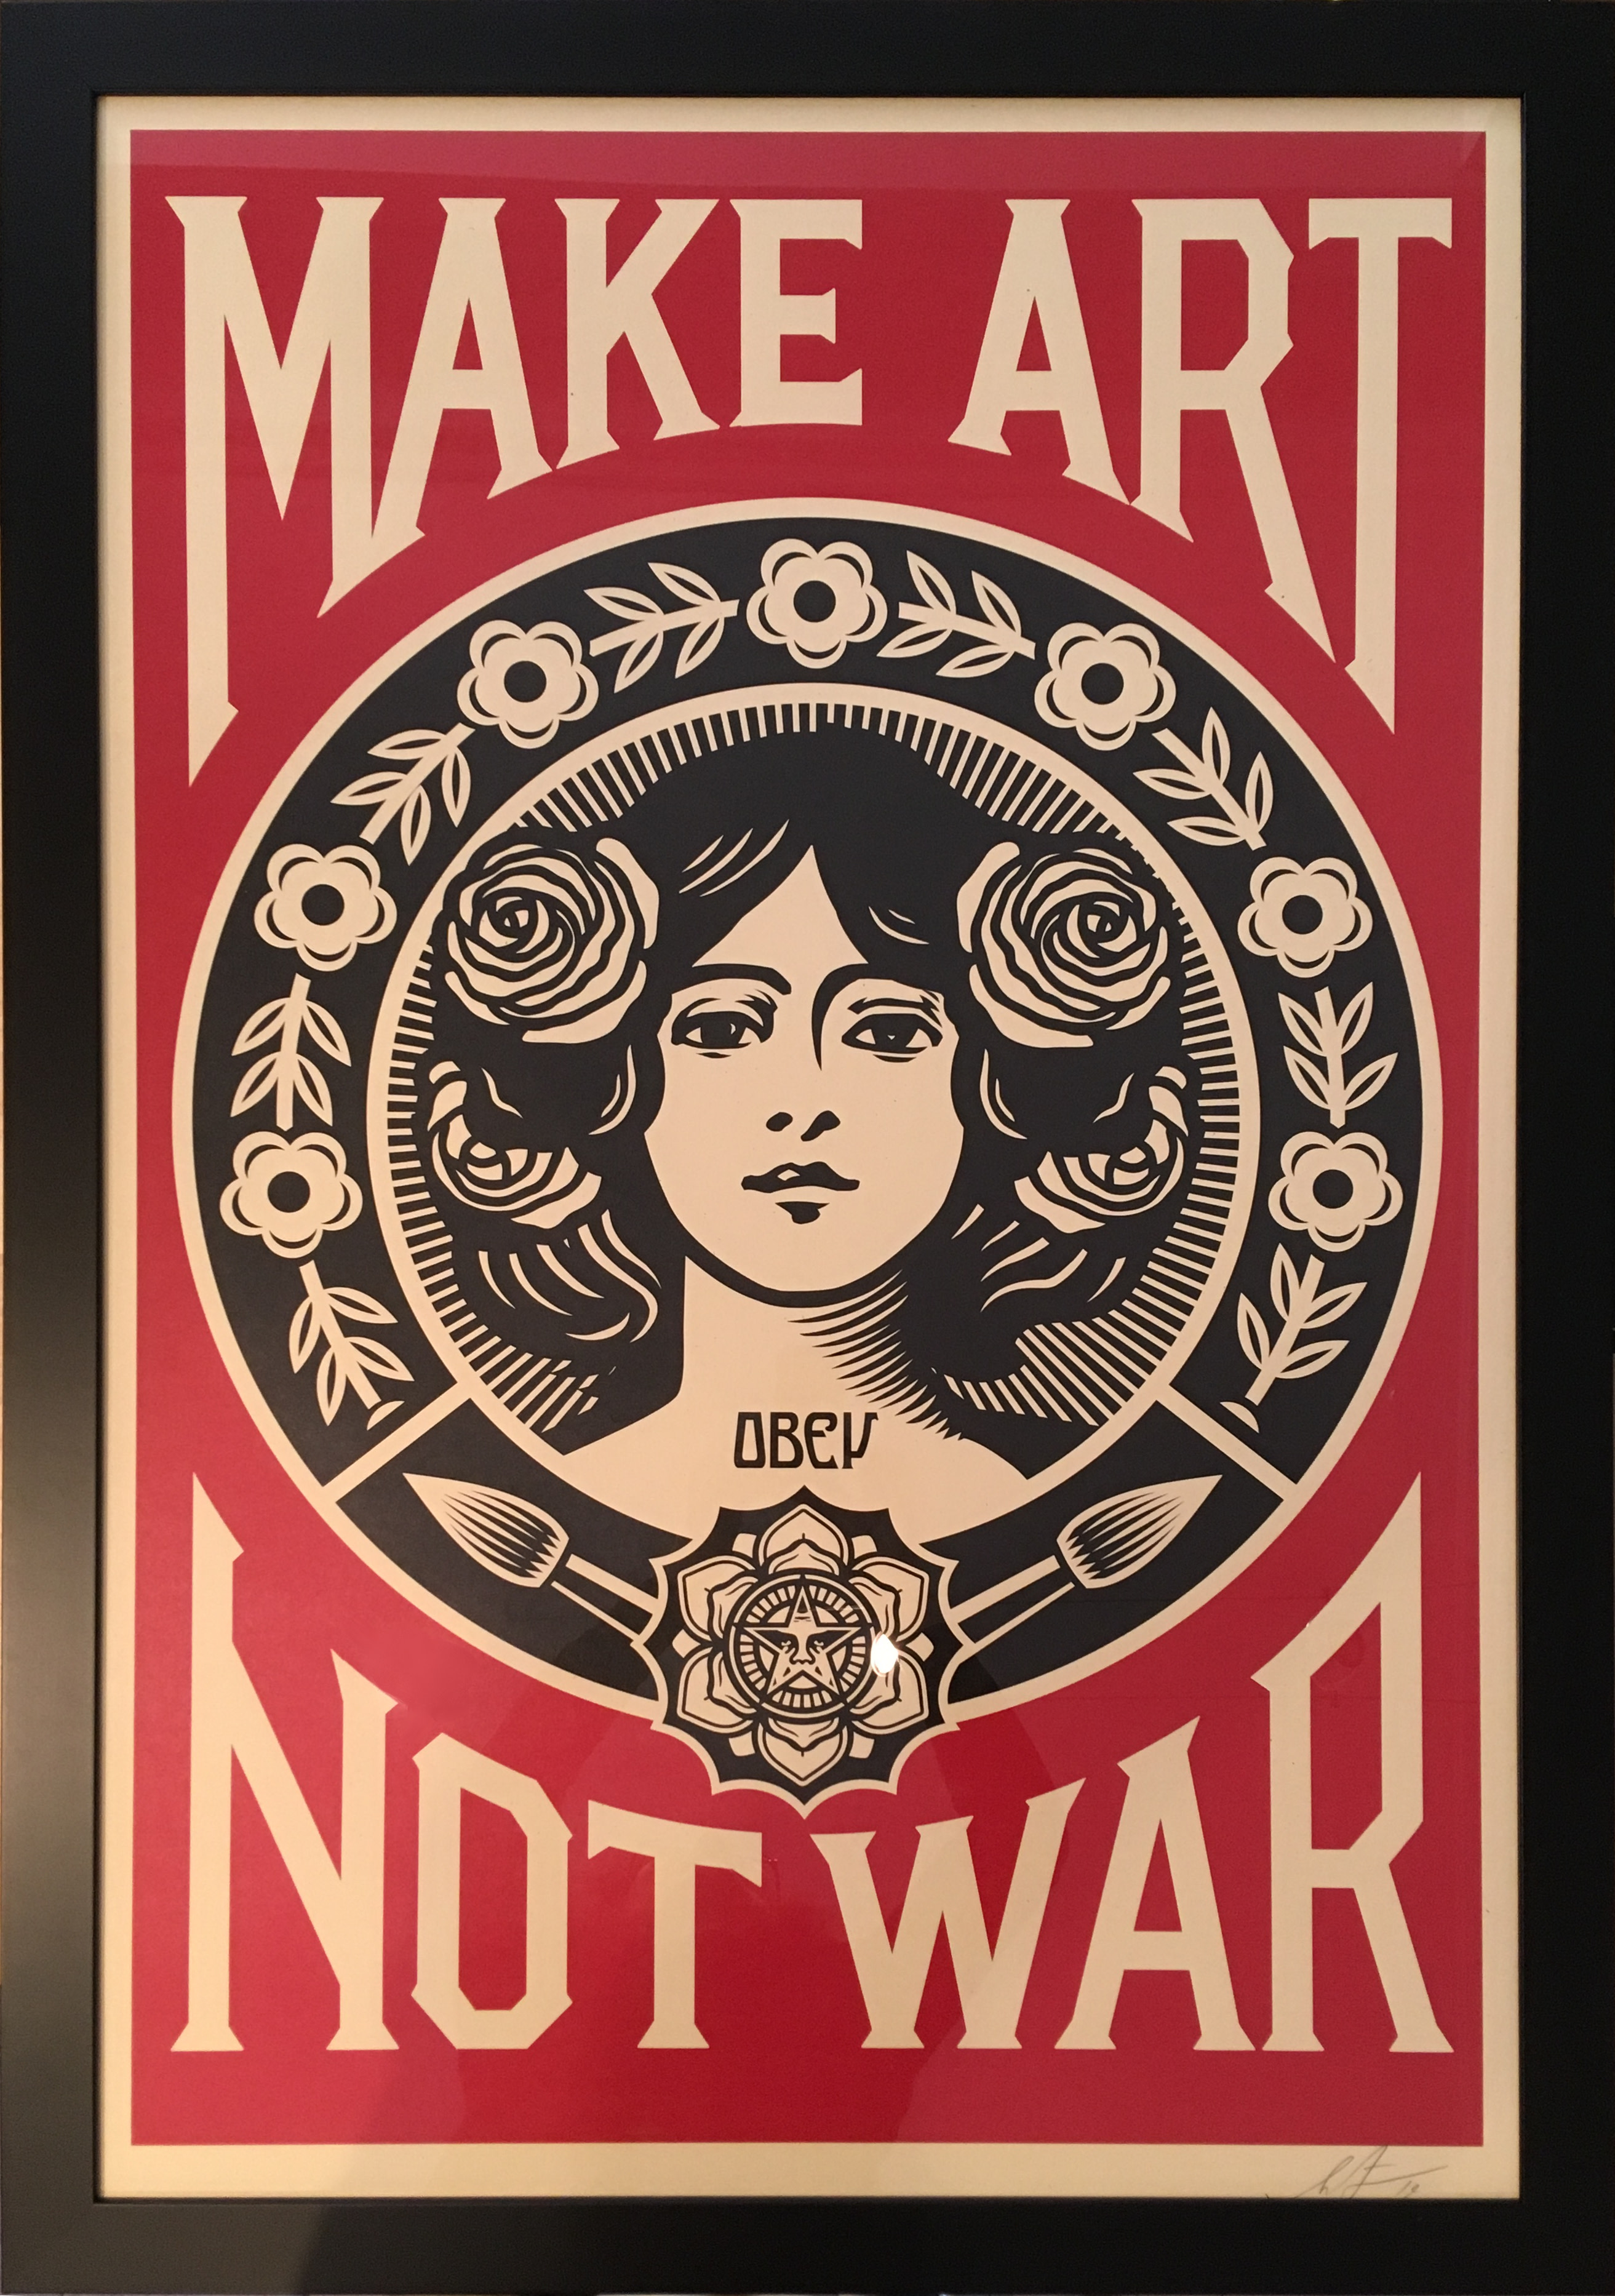 Cadrine : Encadrement sur-mesure d'une affiche "Make Art Not War"